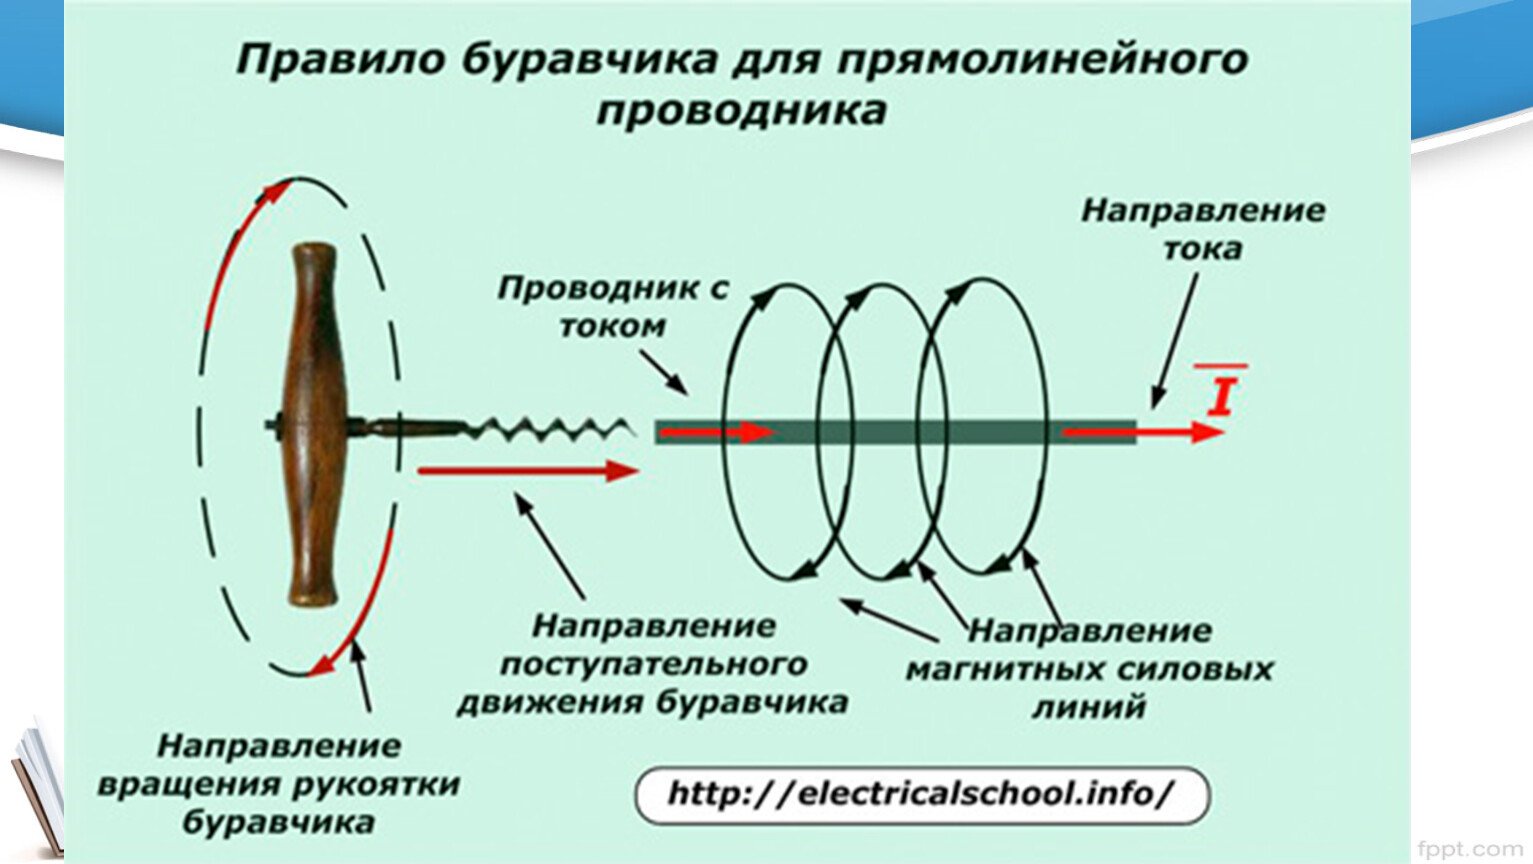 Как определить направление тока по правилу. Правило буравчика для прямолинейного проводника с током. Правило буравчика для прямолинейного проводника. Направление тока по правилу буравчика. Правило буравчика для проводника с током.